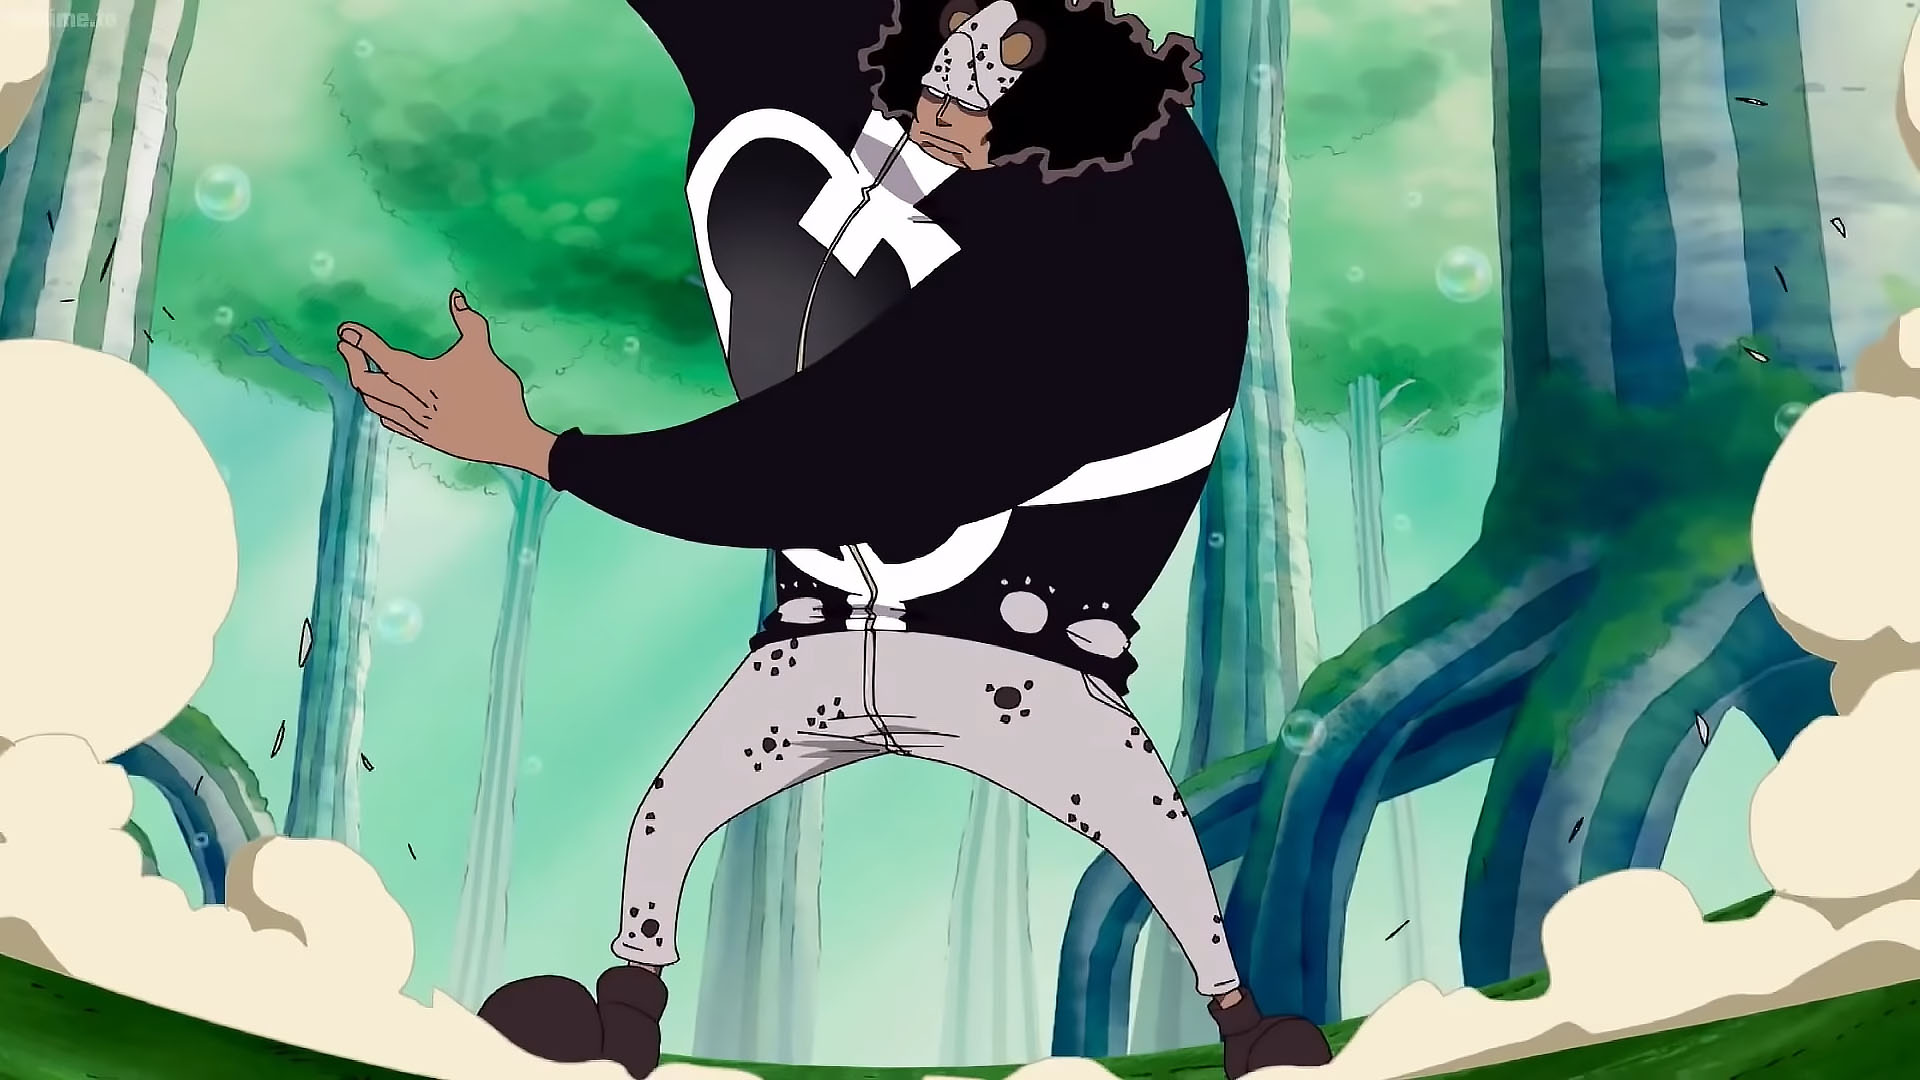 Best One Piece Episodes